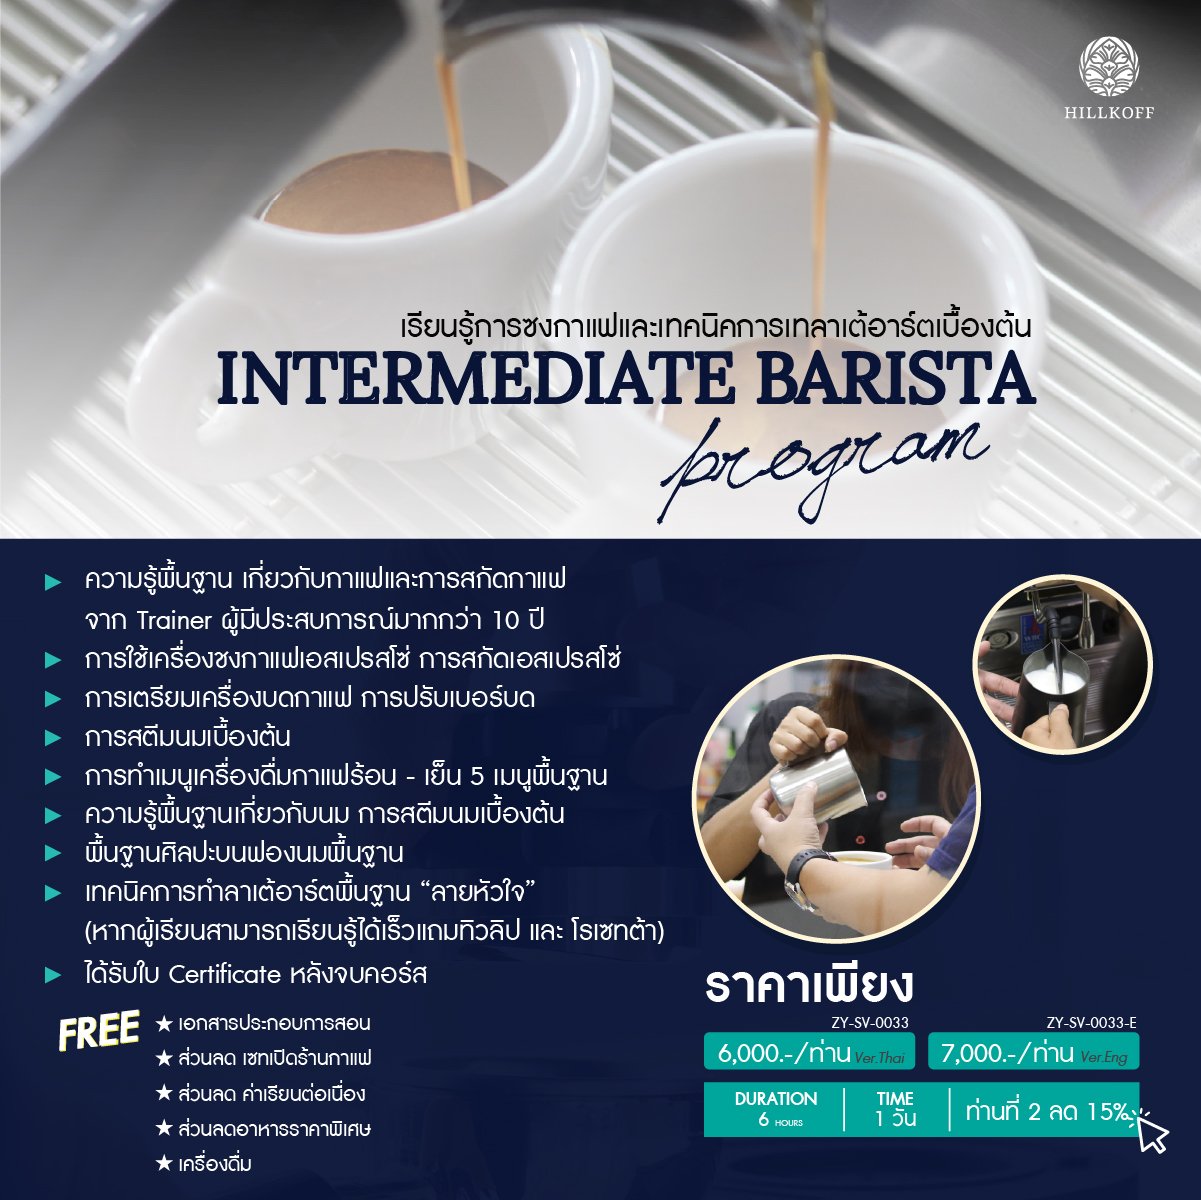 คอร์สเรียน การซงกาแฟและเทคนิคการเทลาเต้อาร์ตเบื้องต้น INTERMEDIATE BARISTA   สถานที่: เชียงใหม่